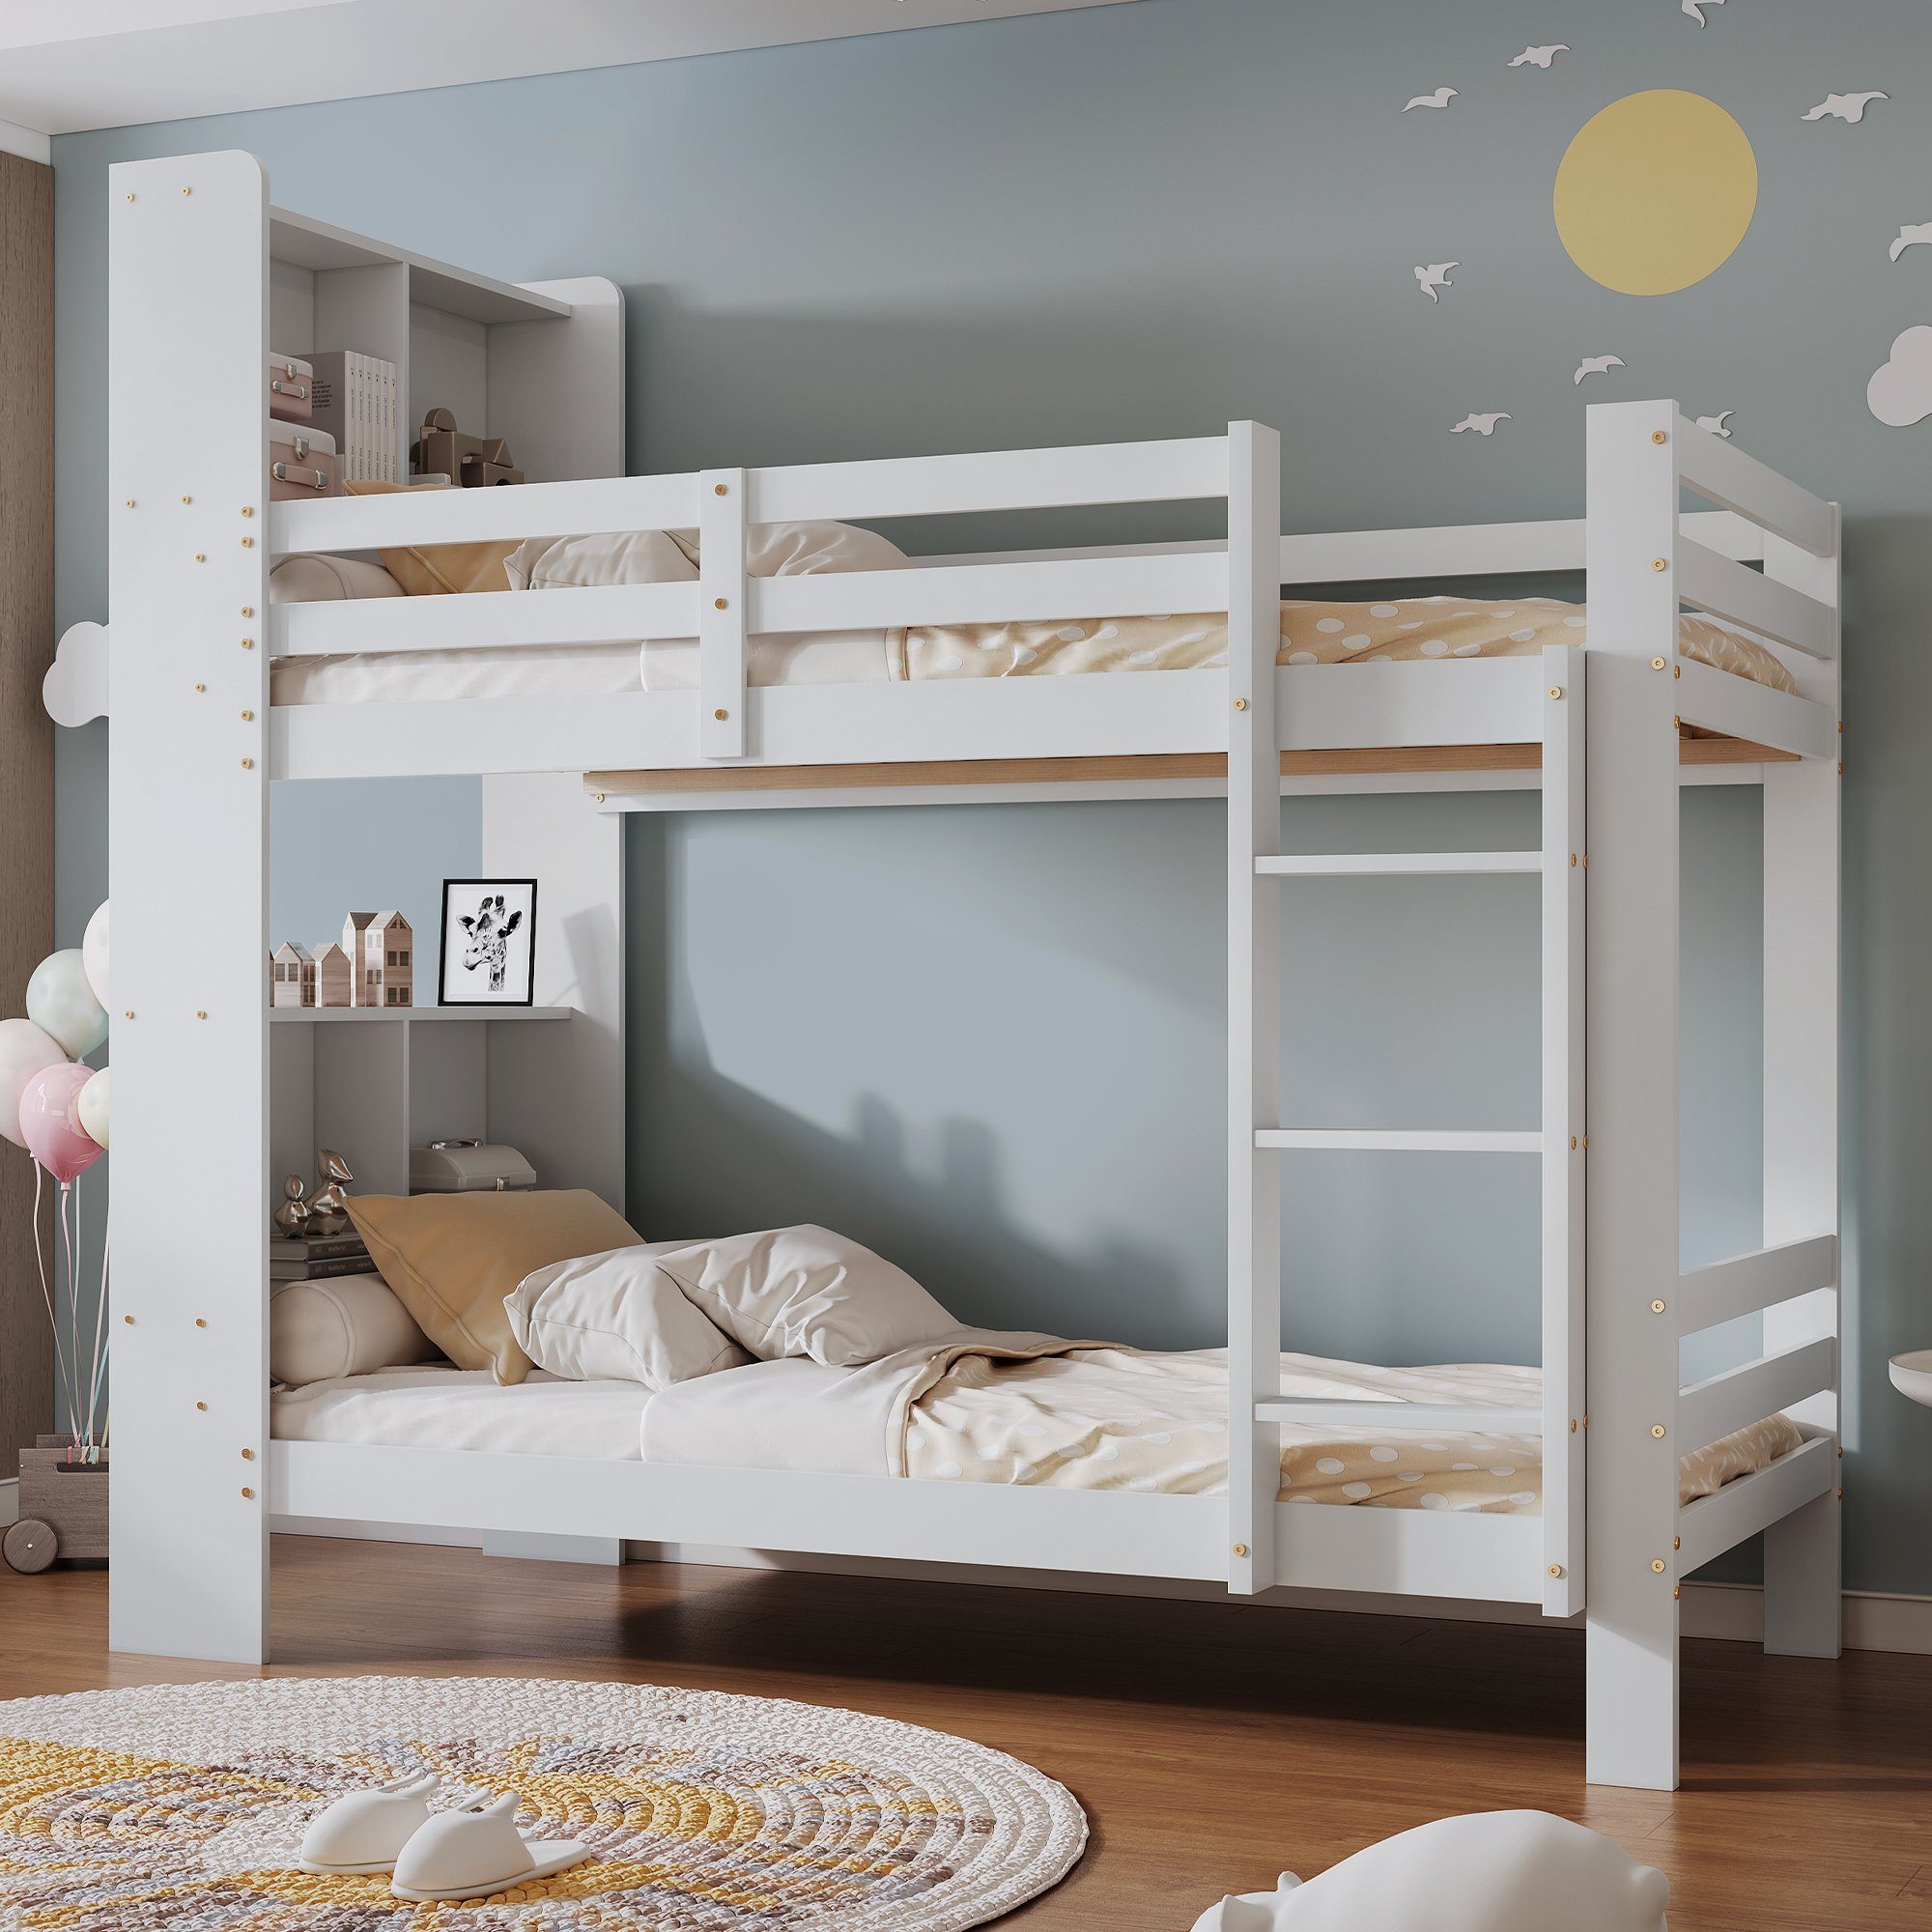 Ulife Etagenbett Kinderbett mit Regalen und dreistufiger,Stauraum-Holzbett